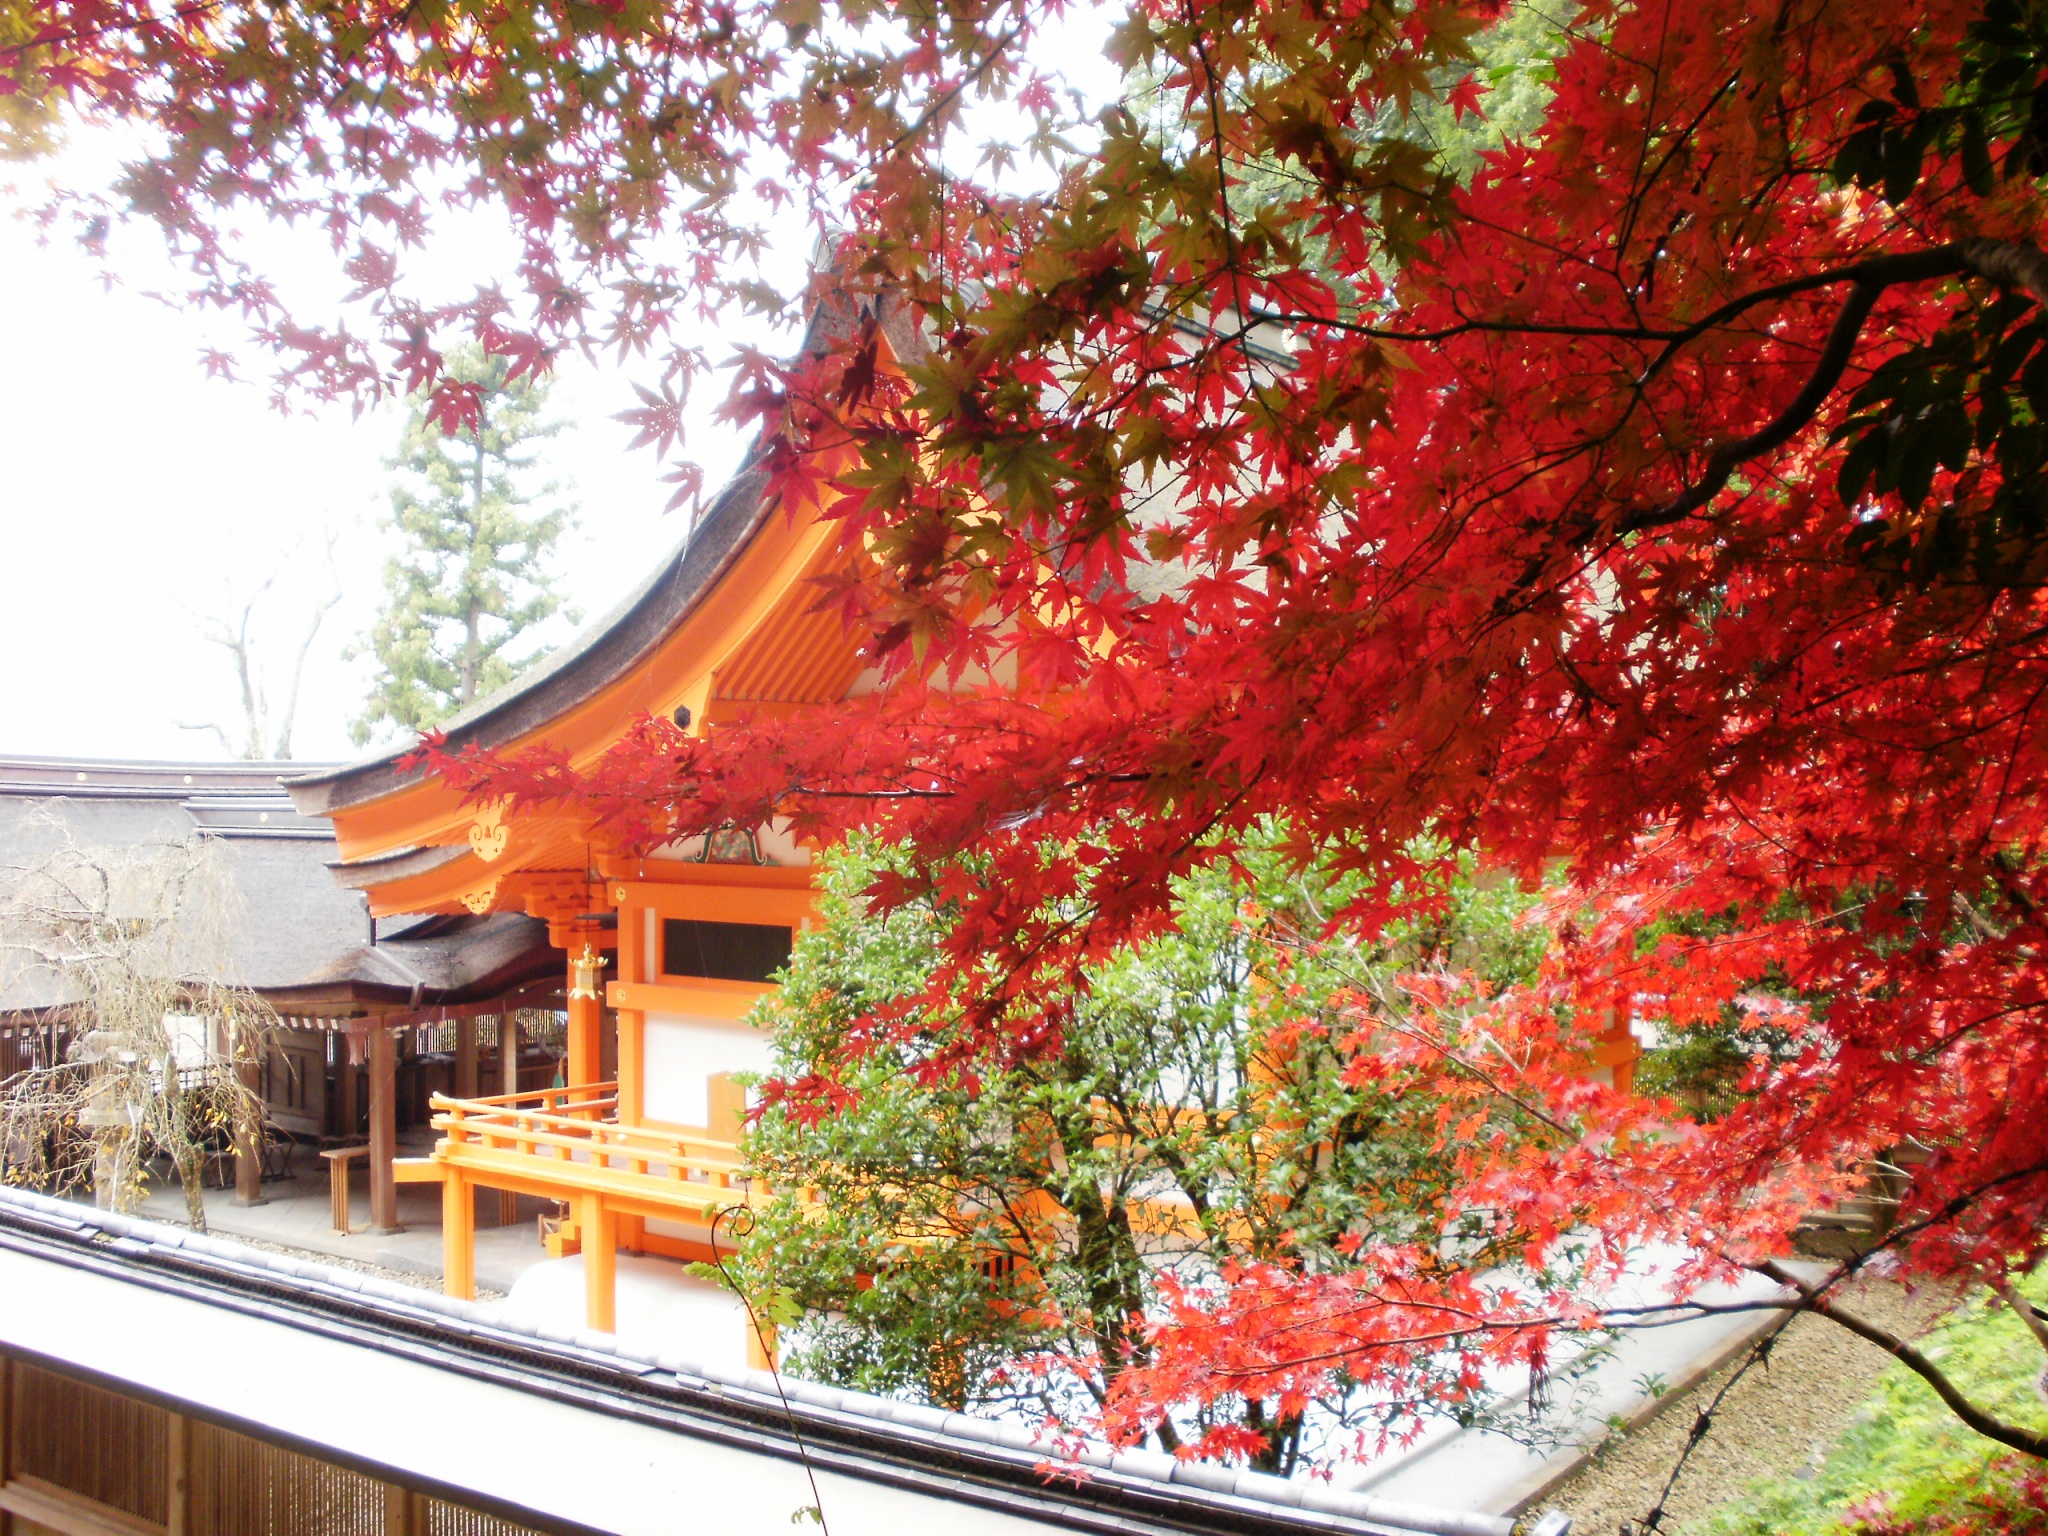 Kameoka, Kota Kecil dengan Wisata Menarik di Jepang